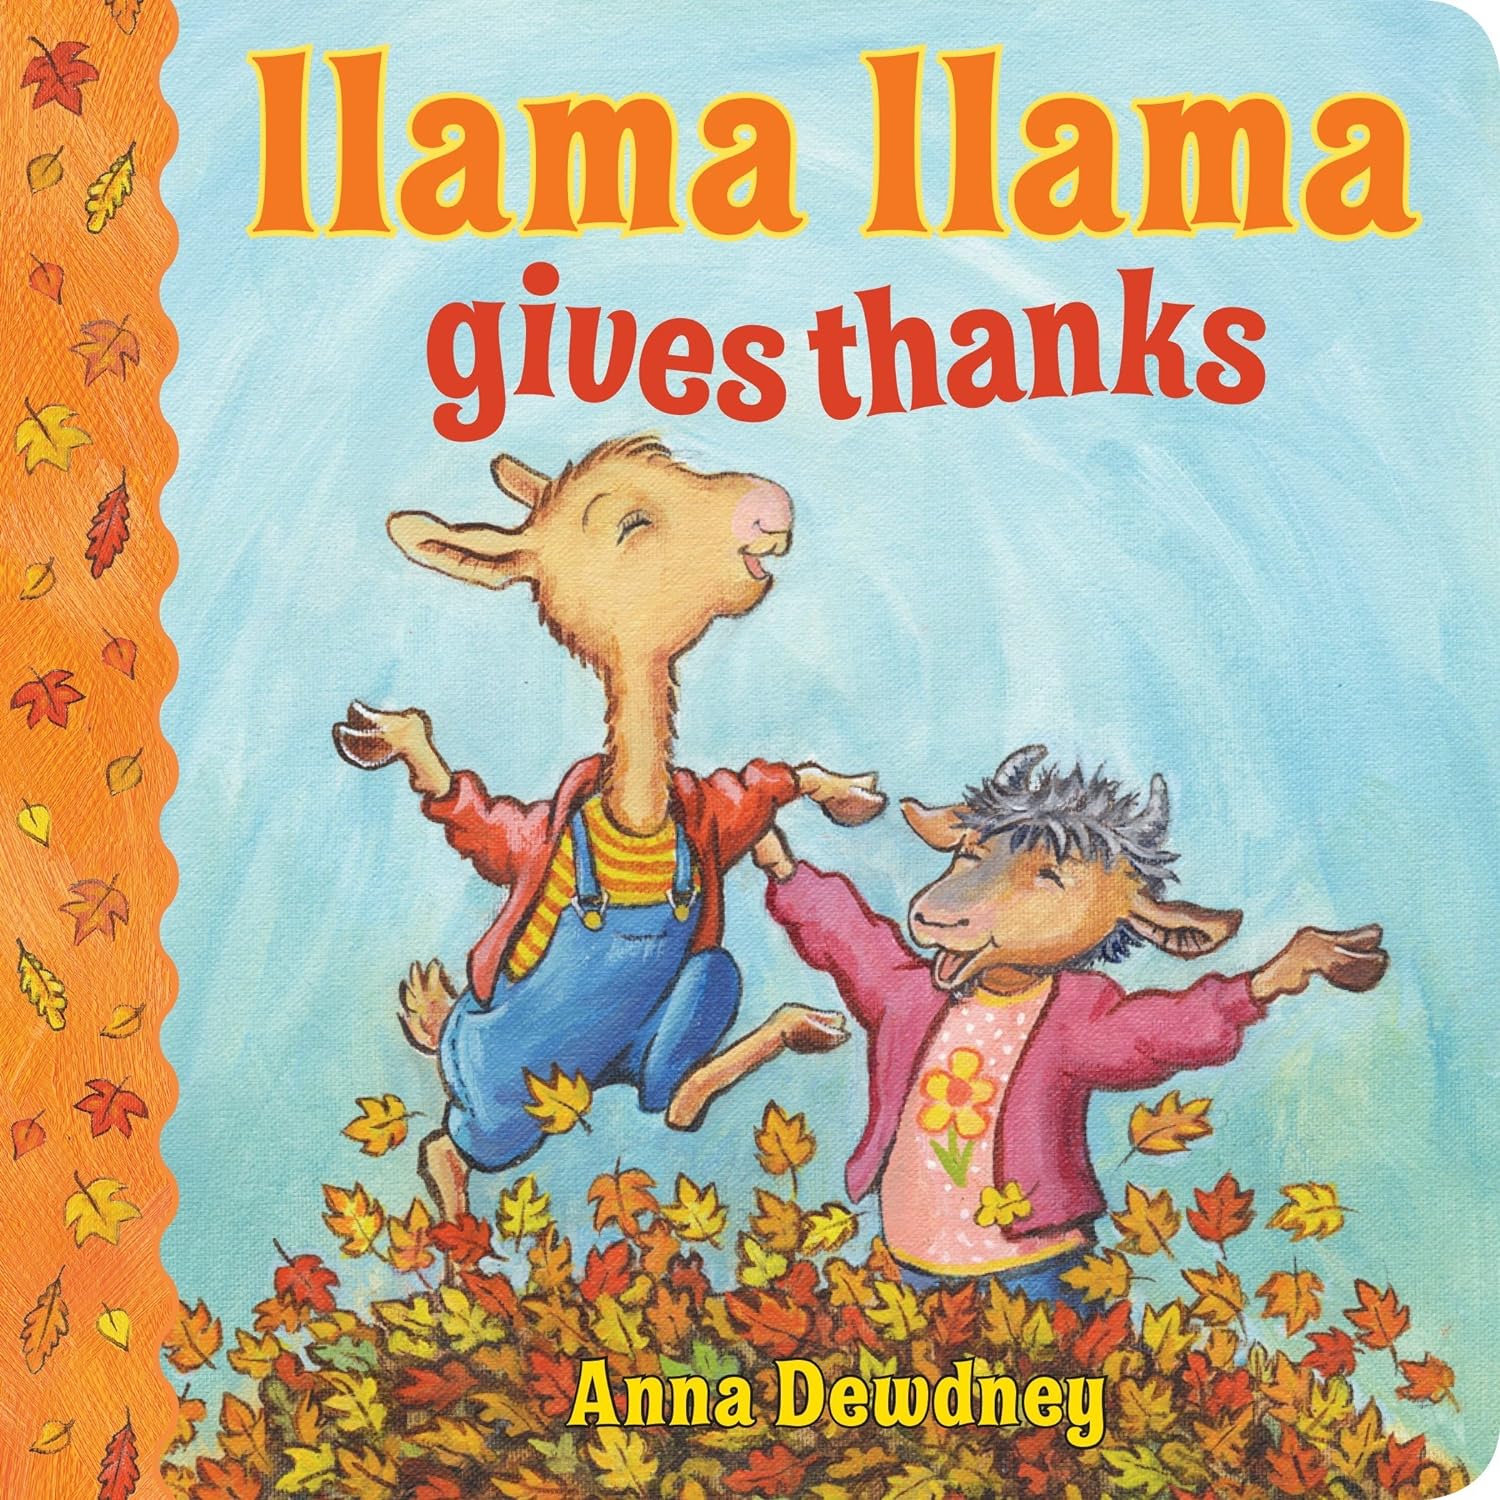 llama llama gives thanks book